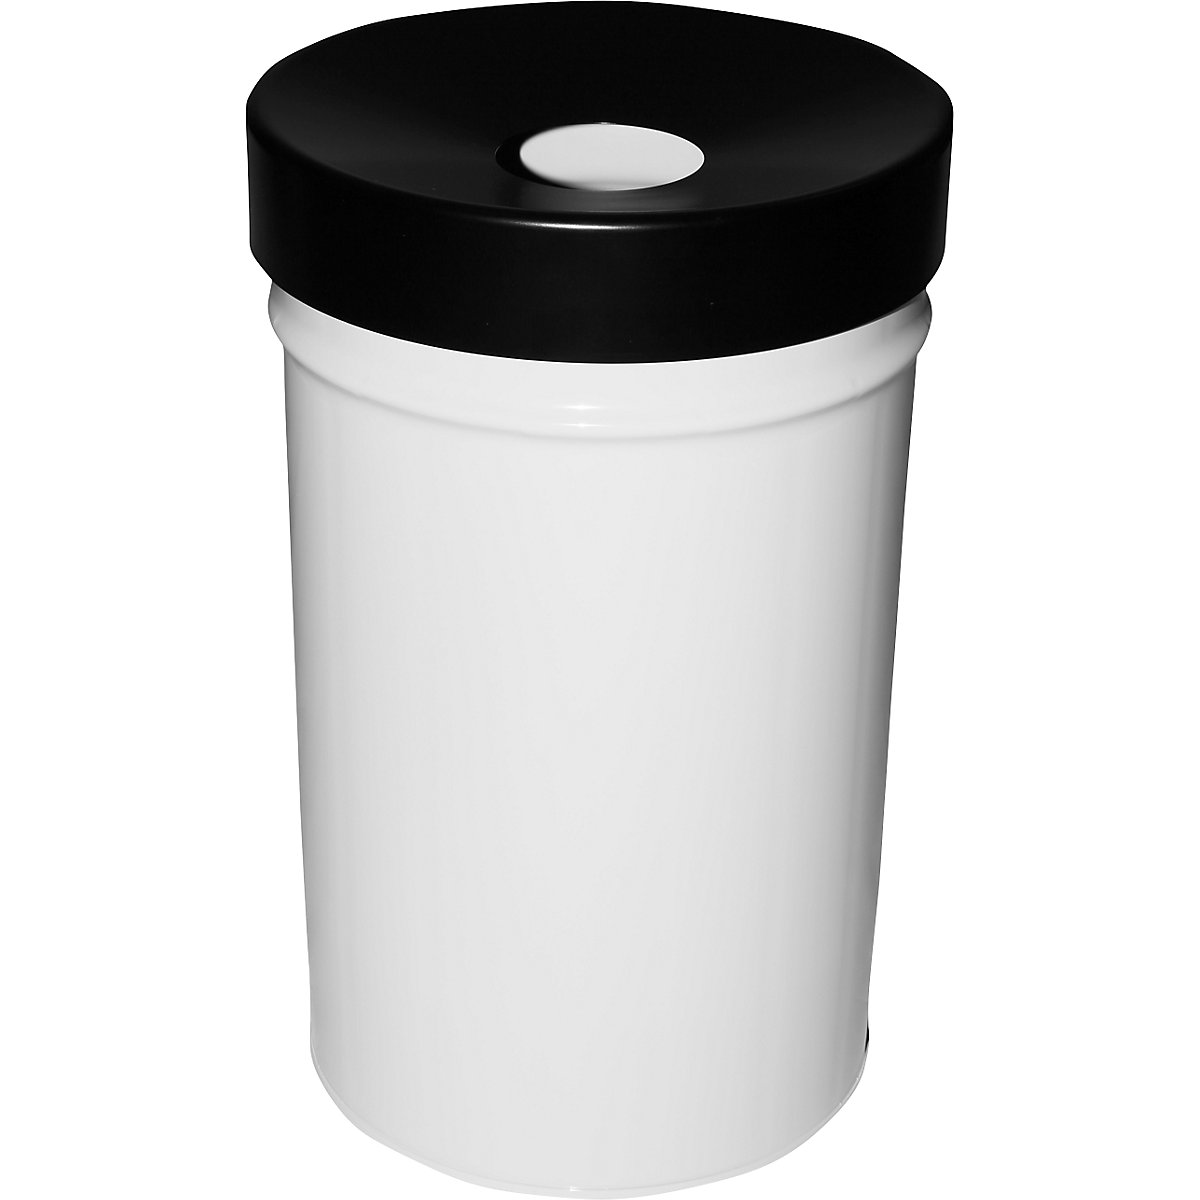 Abfallbehälter, selbstlöschend, Volumen 60 l, HxØ 630 x 392 mm, weiß